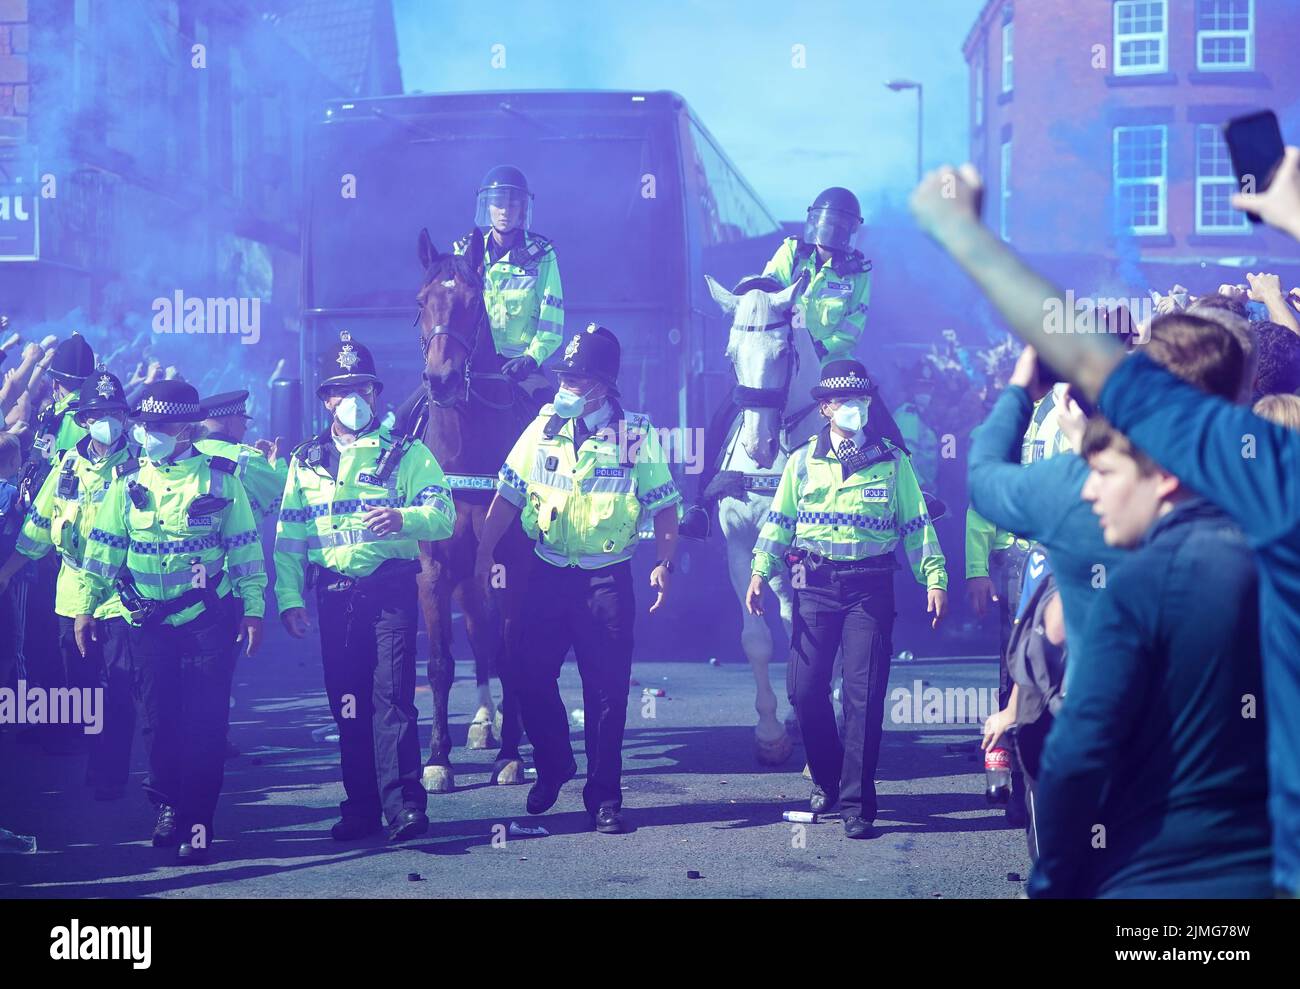 Der Everton-Teambus, der während des Spiels der Premier League im Goodison Park, Liverpool, hinter berittenen Polizeibeamten eintraf. Bilddatum: Samstag, 6. August 2022. Stockfoto